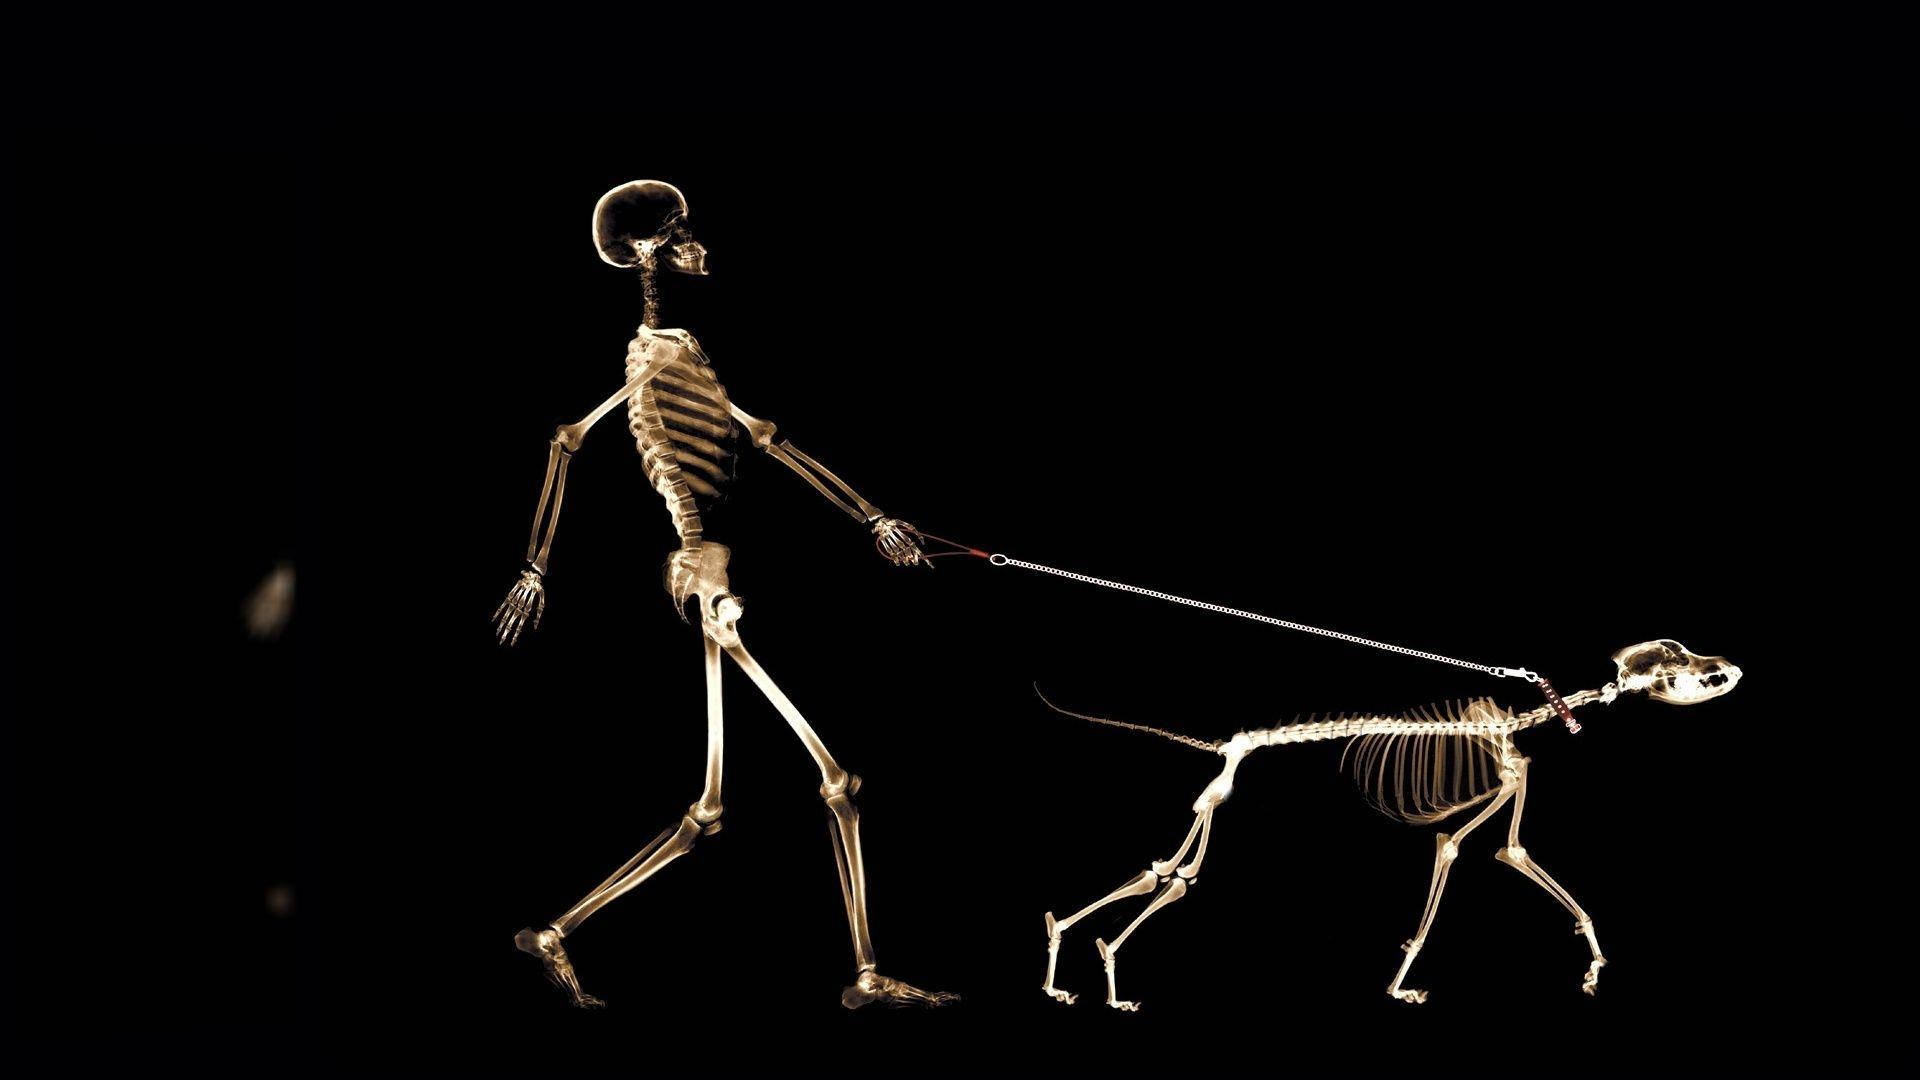 Papelde Parede De Esqueleto De Cachorro E Humano. Papel de Parede